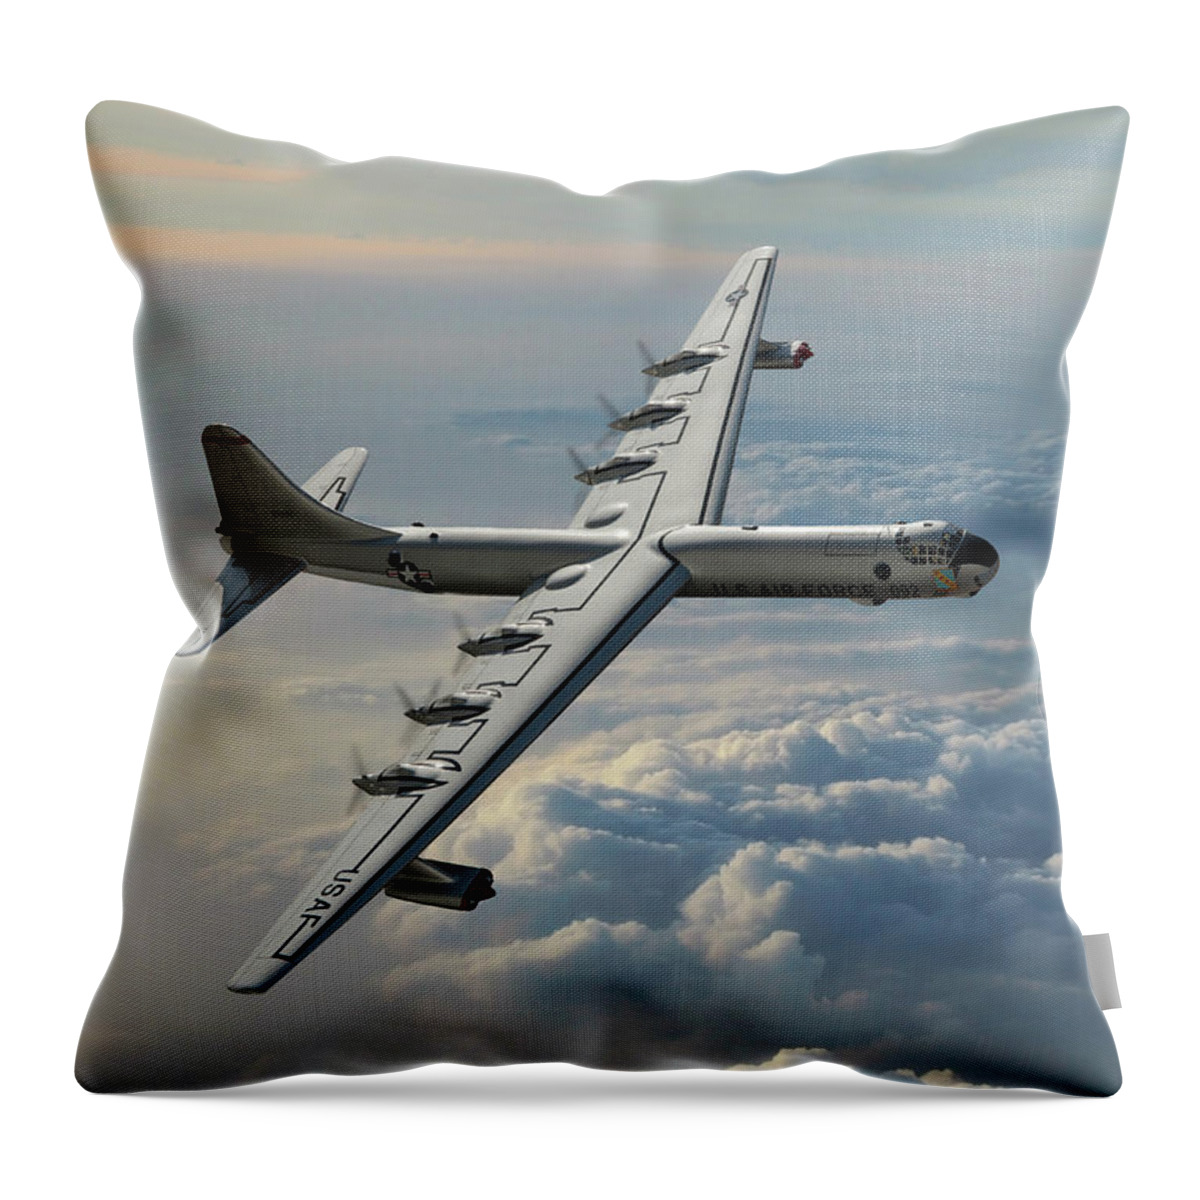 U.s. Air Force B-36 Bomber Throw Pillow featuring the digital art Convair RB-36F Peacemaker by Erik Simonsen